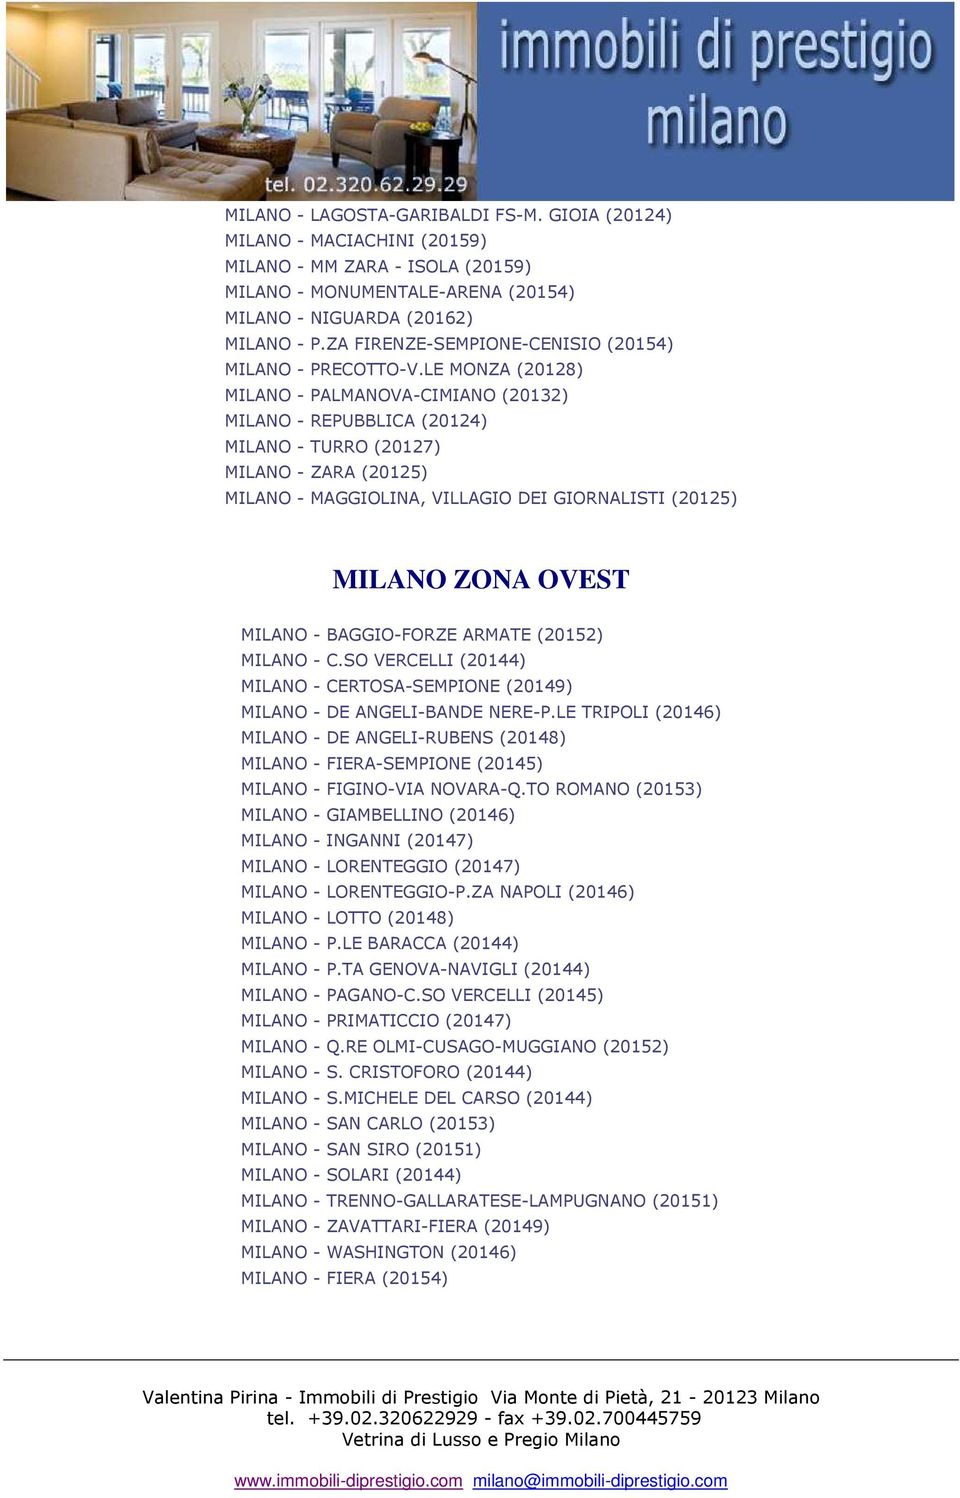 LE MONZA (20128) MILANO - PALMANOVA-CIMIANO (20132) MILANO - REPUBBLICA (20124) MILANO - TURRO (20127) MILANO - ZARA (20125) MILANO - MAGGIOLINA, VILLAGIO DEI GIORNALISTI (20125) MILANO ZONA OVEST